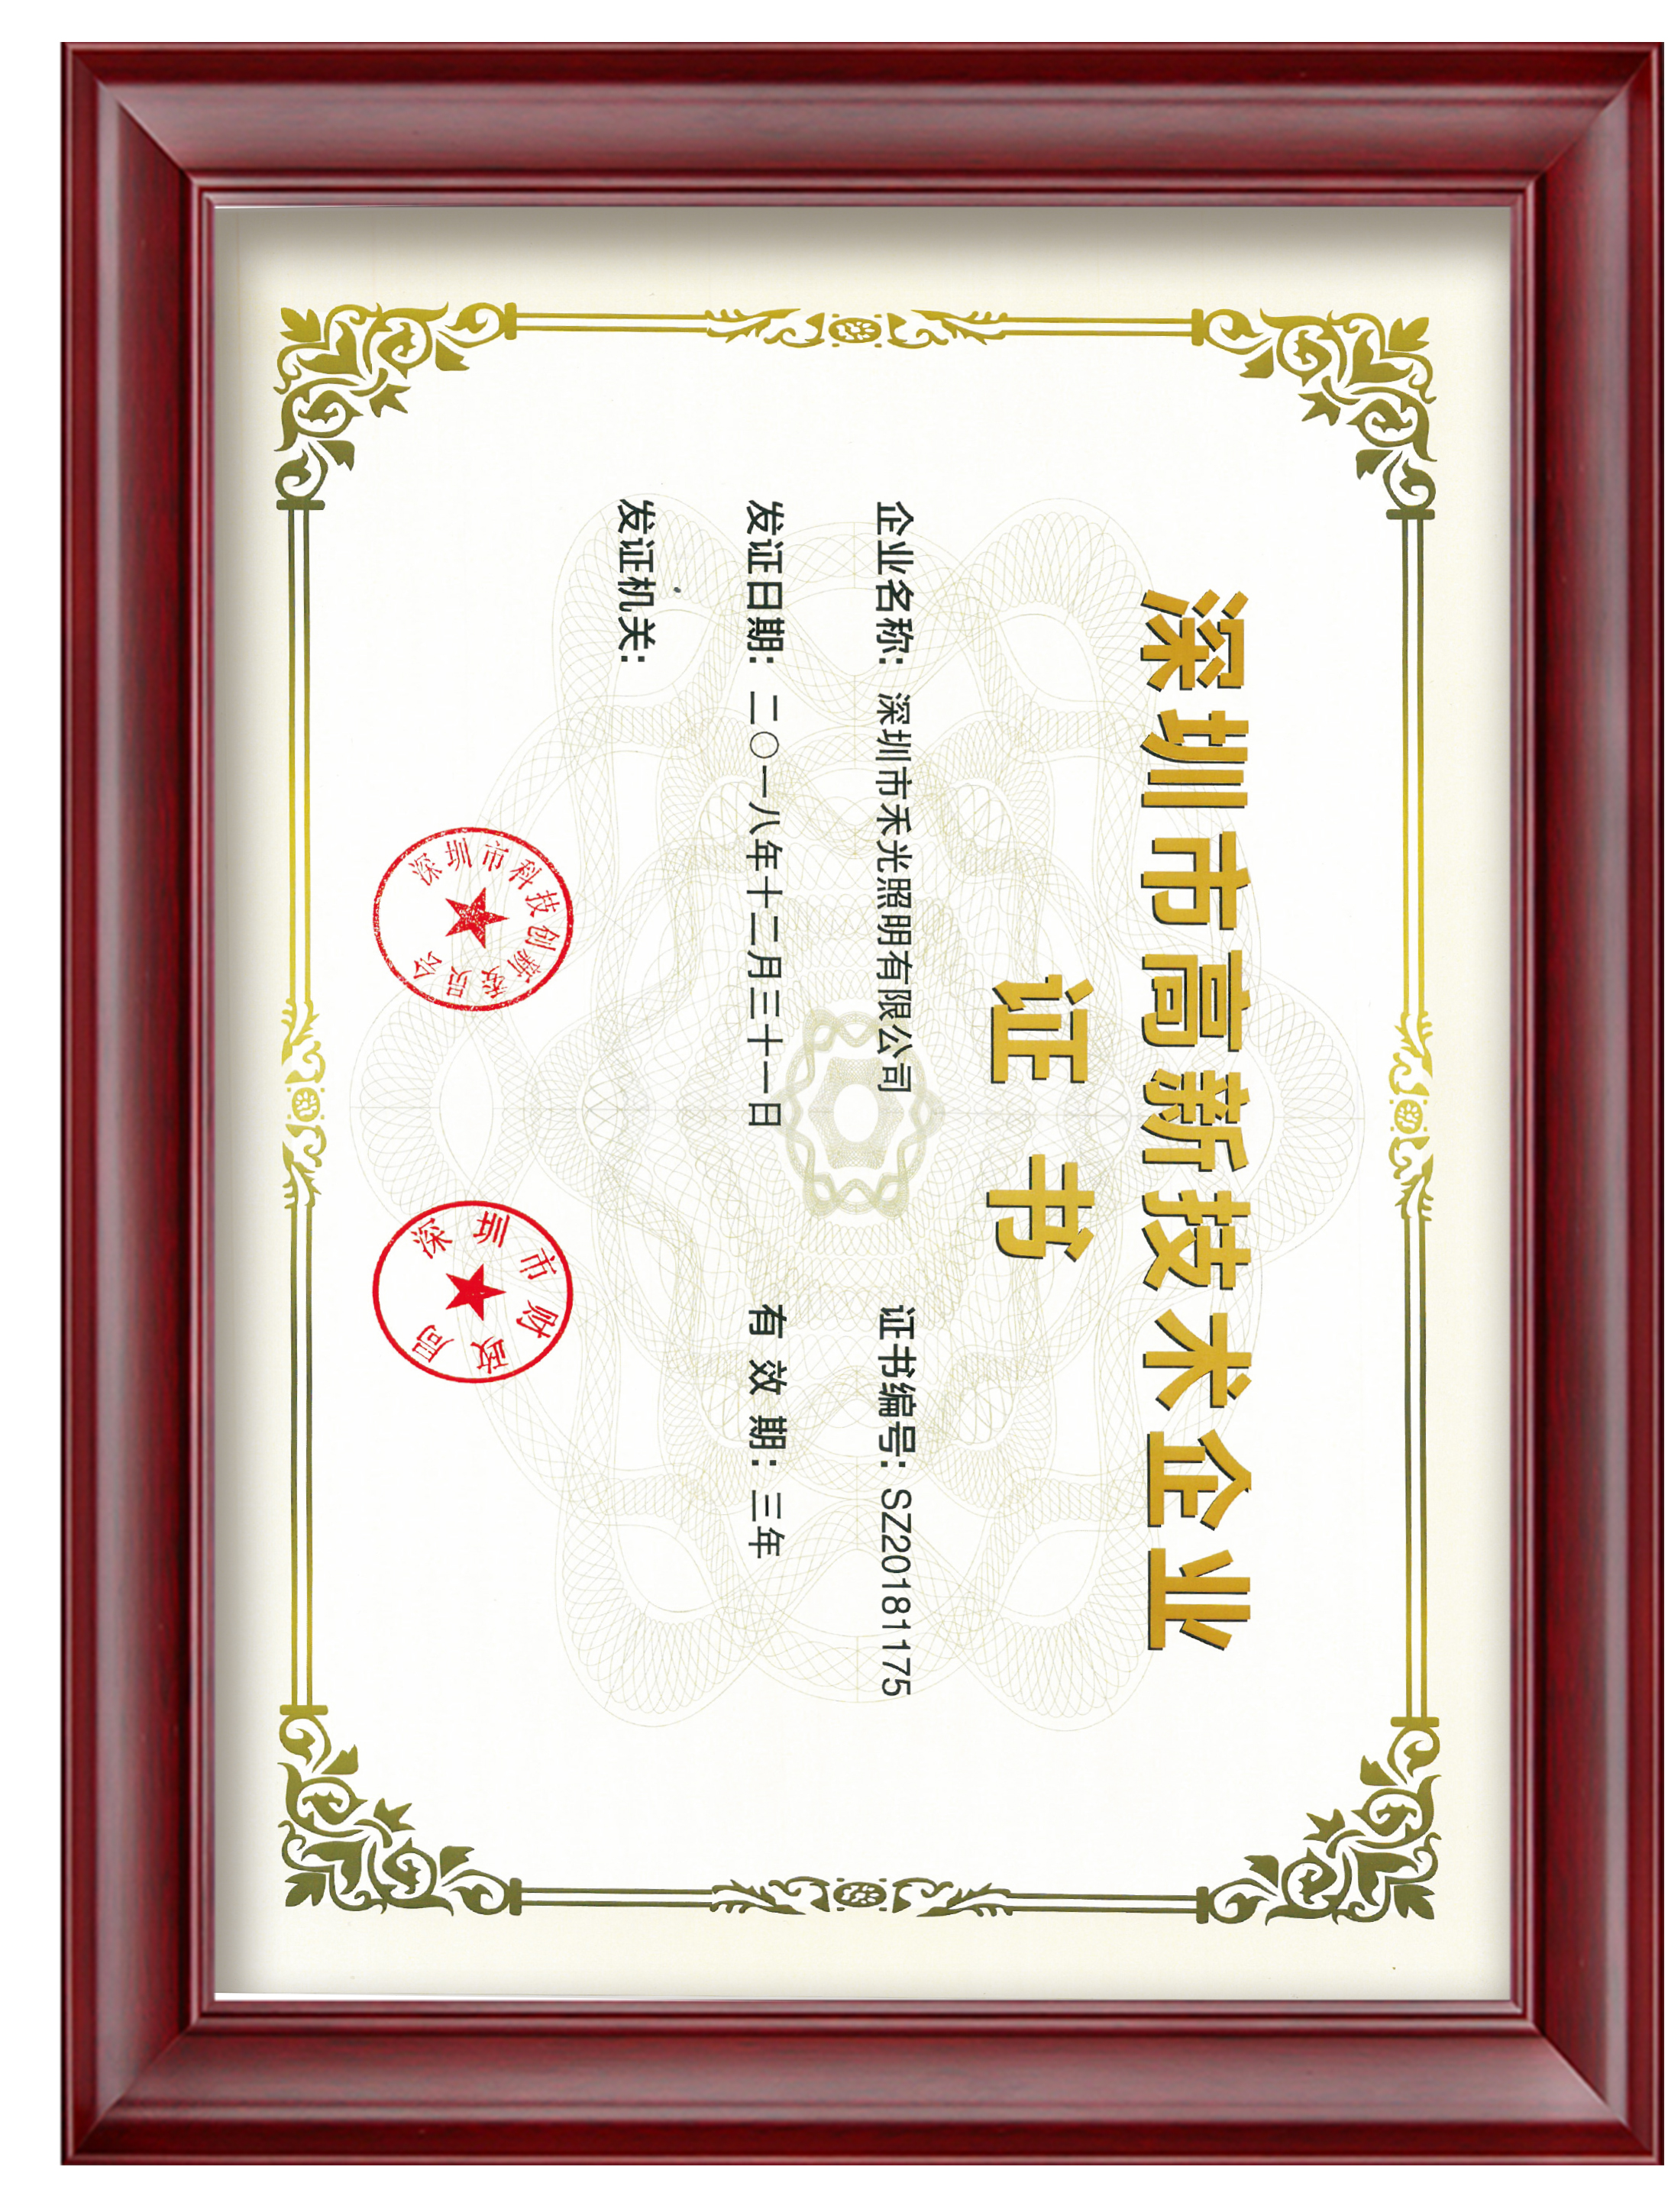 12. Certificat de întreprindere de înaltă tehnologie Shenzhen